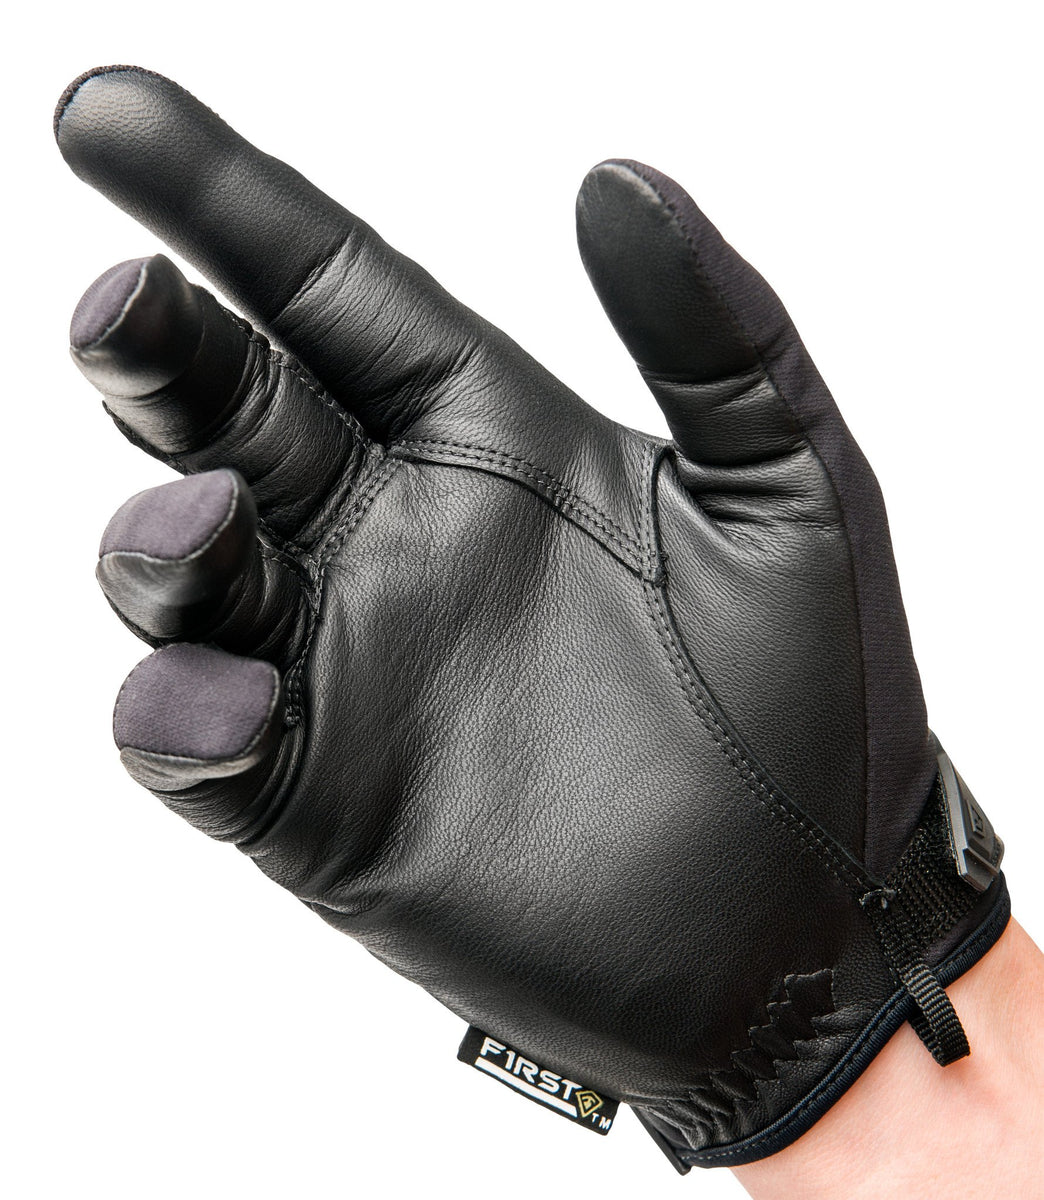 StrikeMaster® Light-Weight Gloves